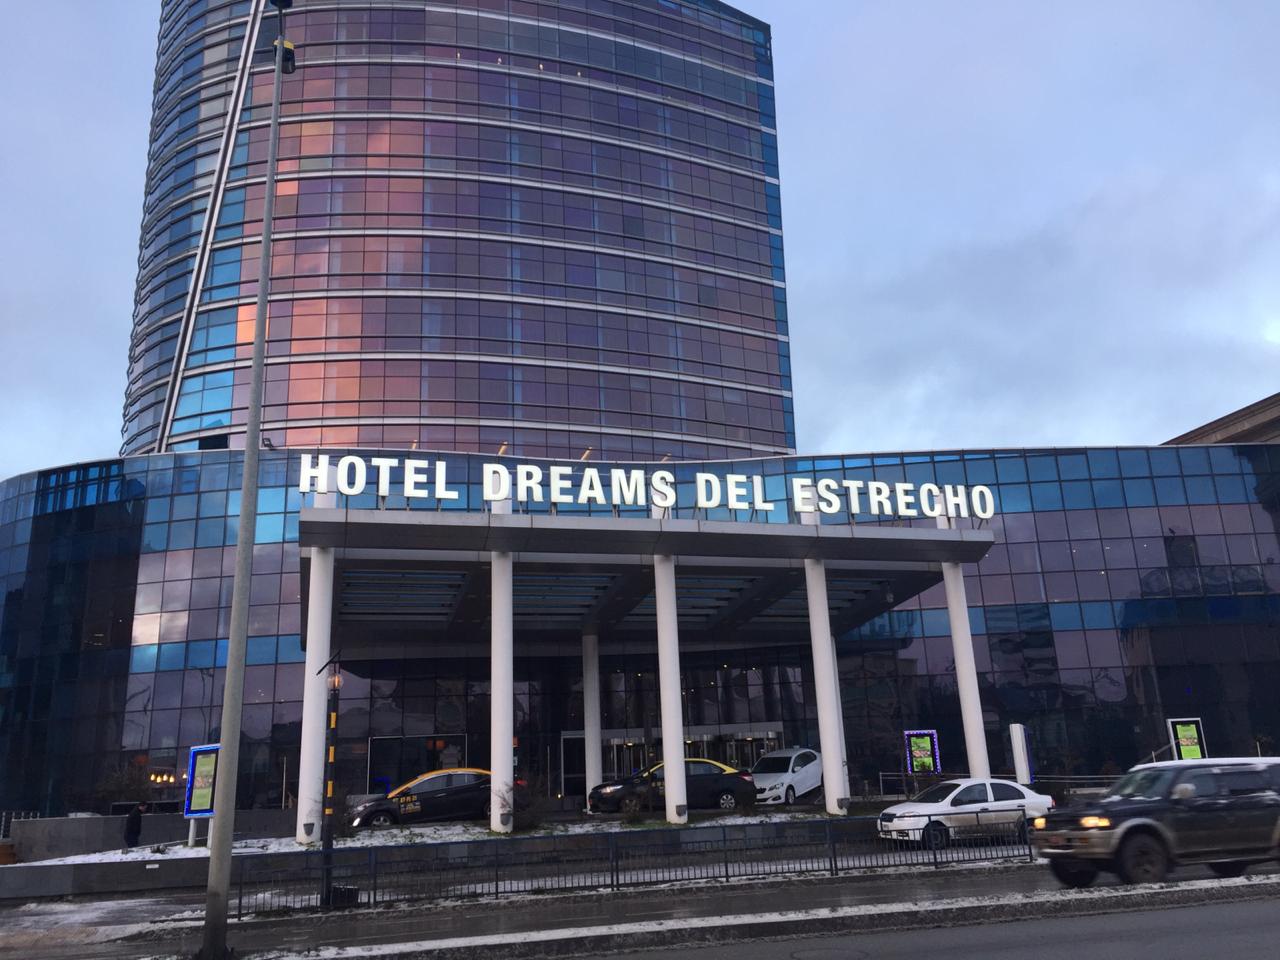 10 millones en equipos de iluminación intentaron hurtar desde el Casino Dreams de Punta Arenas